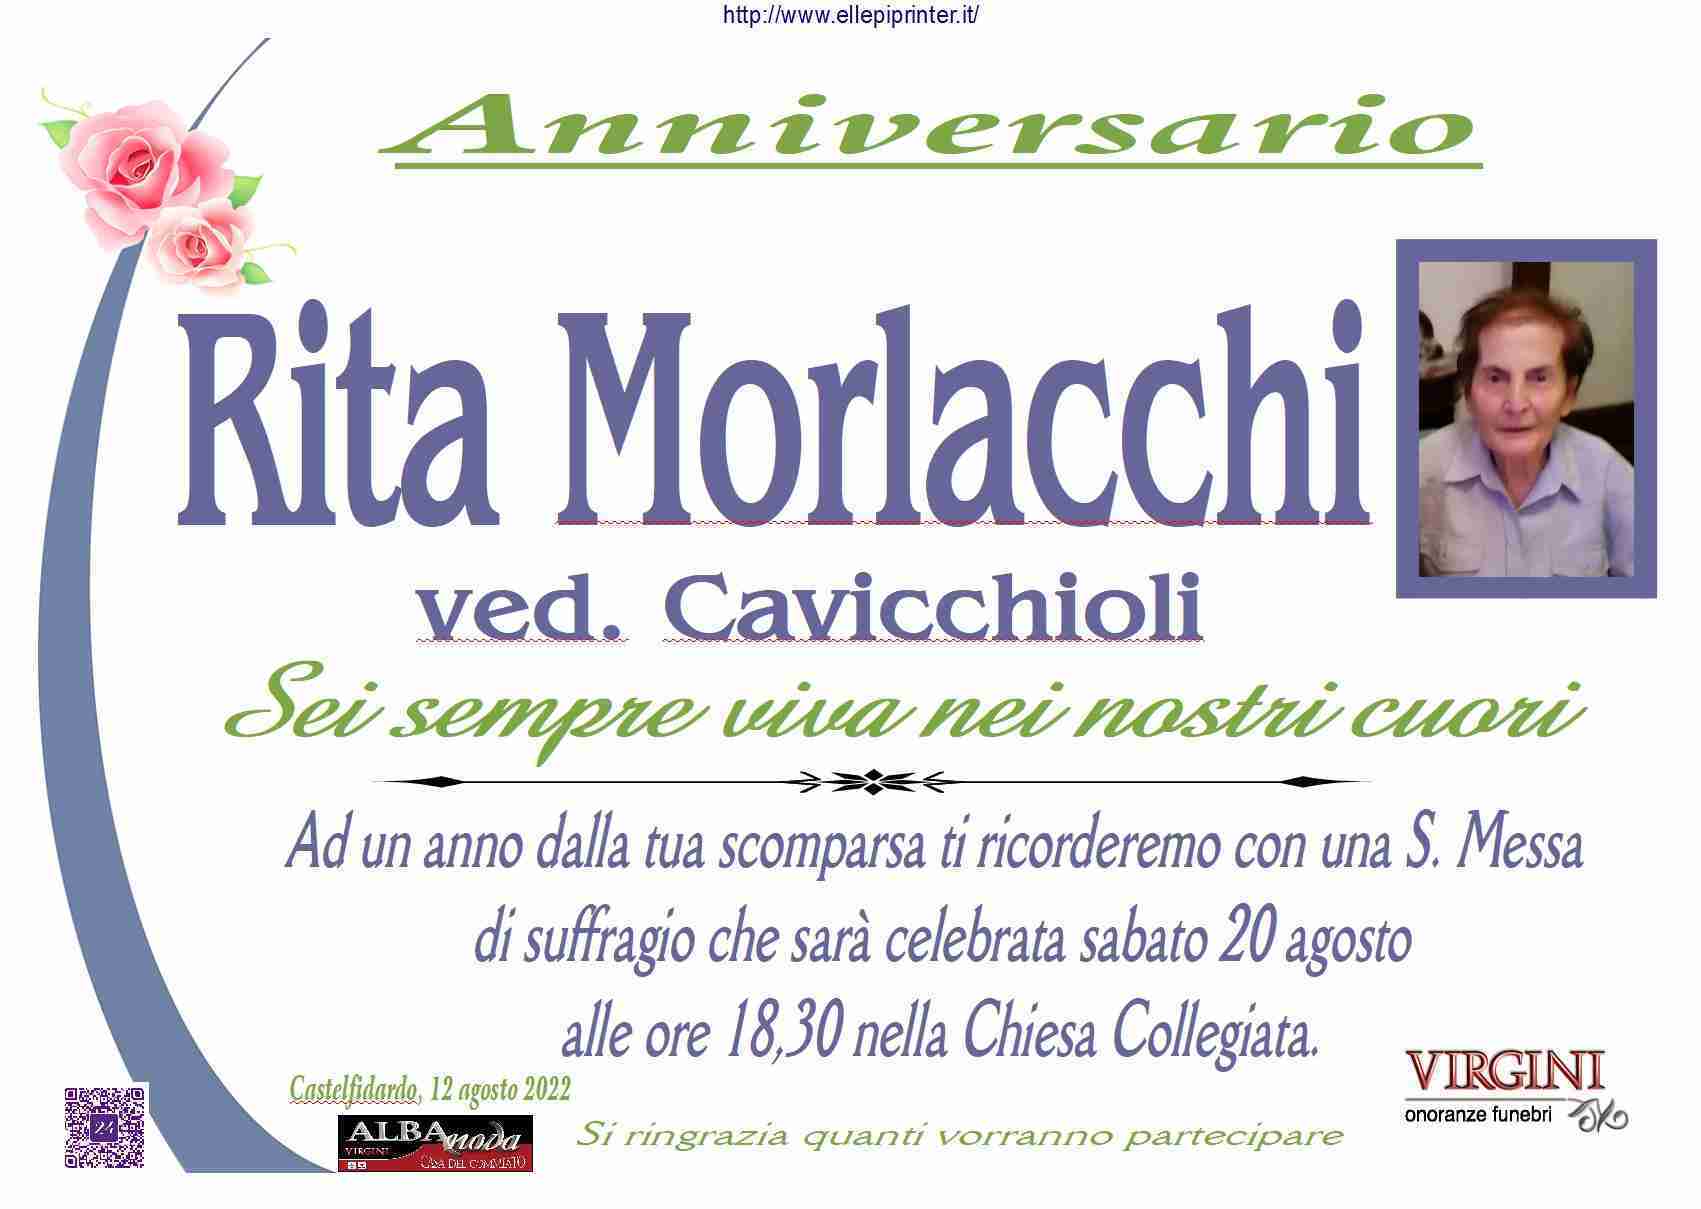 Rita Morlacchi